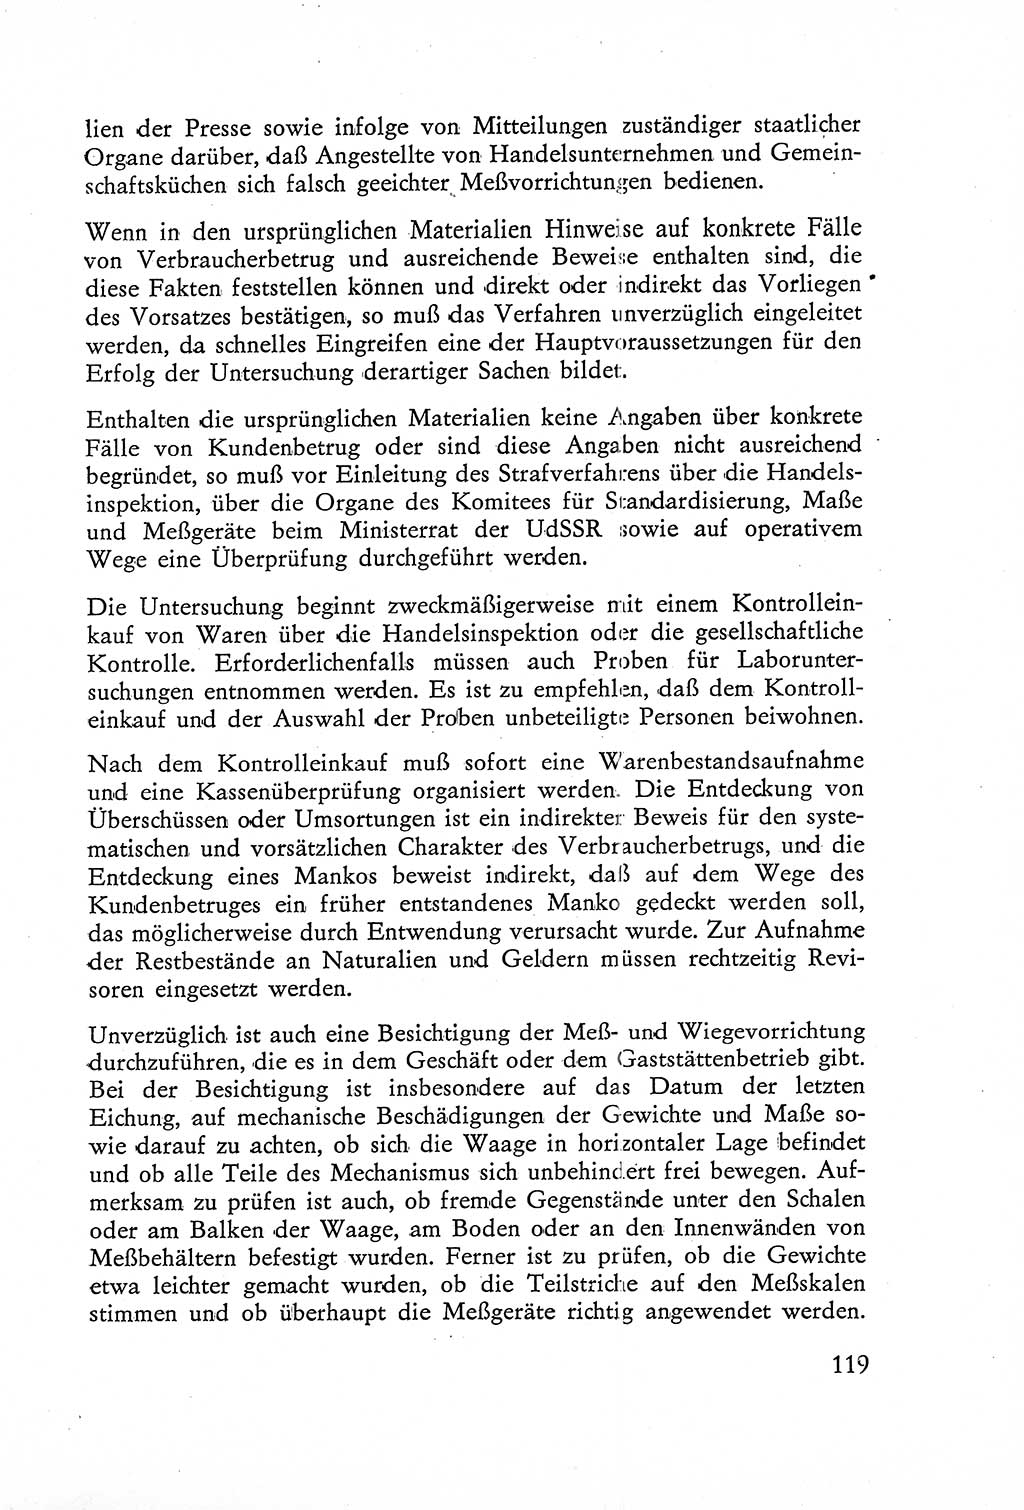 Die Untersuchung einzelner Verbrechensarten [Deutsche Demokratische Republik (DDR)] 1960, Seite 119 (Unters. Verbr.-Art. DDR 1960, S. 119)